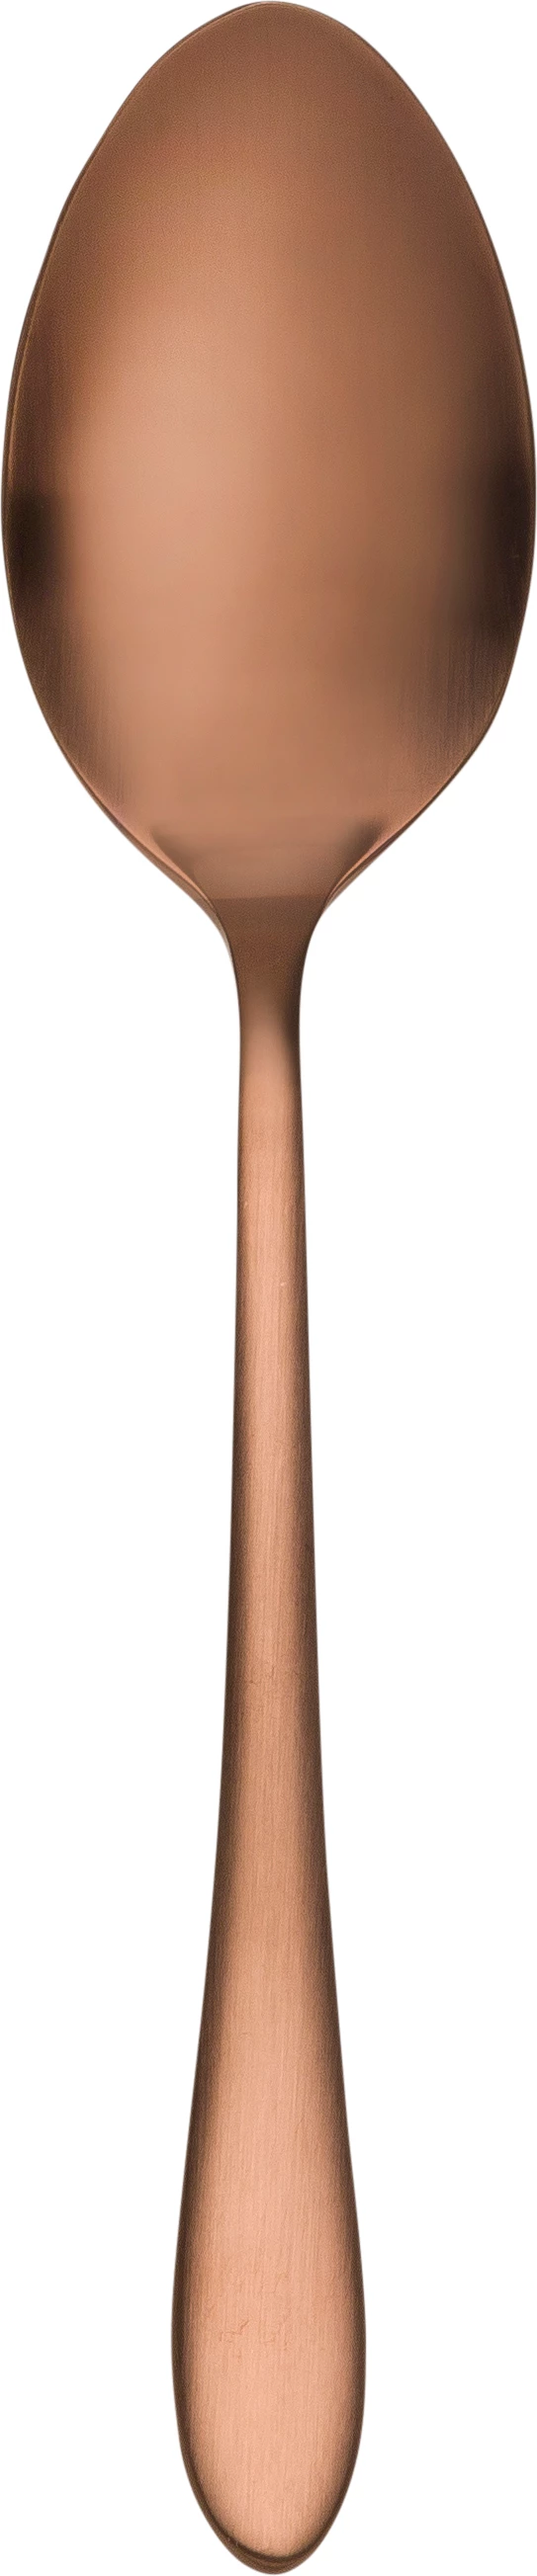 Øland teske, rosaguld, 14 cm